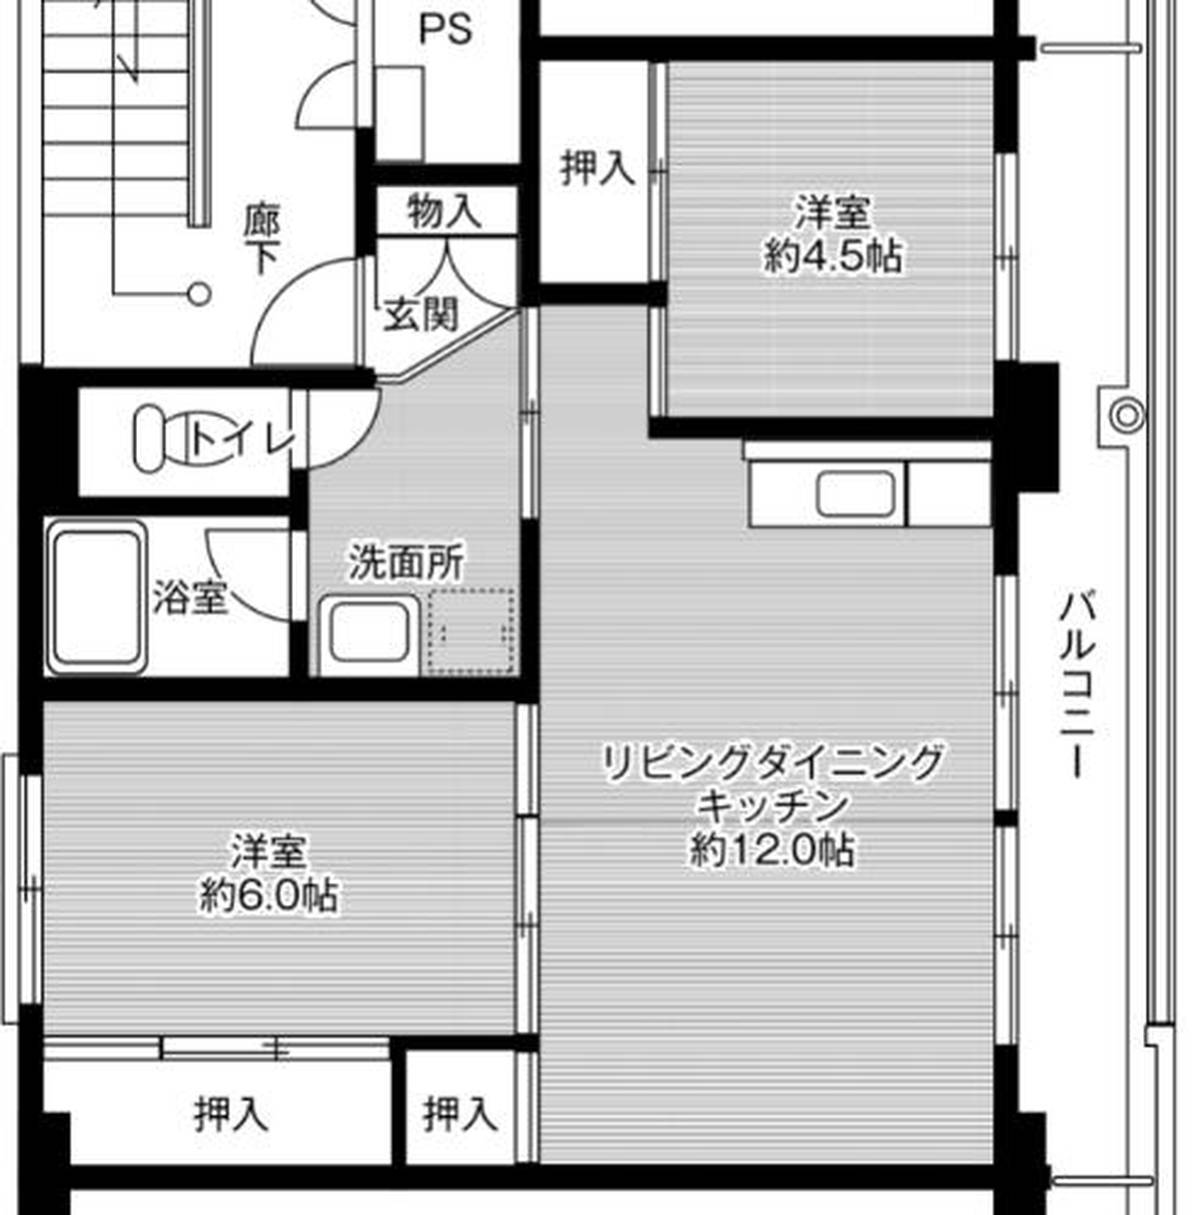 2LDK floorplan of Village House Yamato 2 in Yanagawa-shi